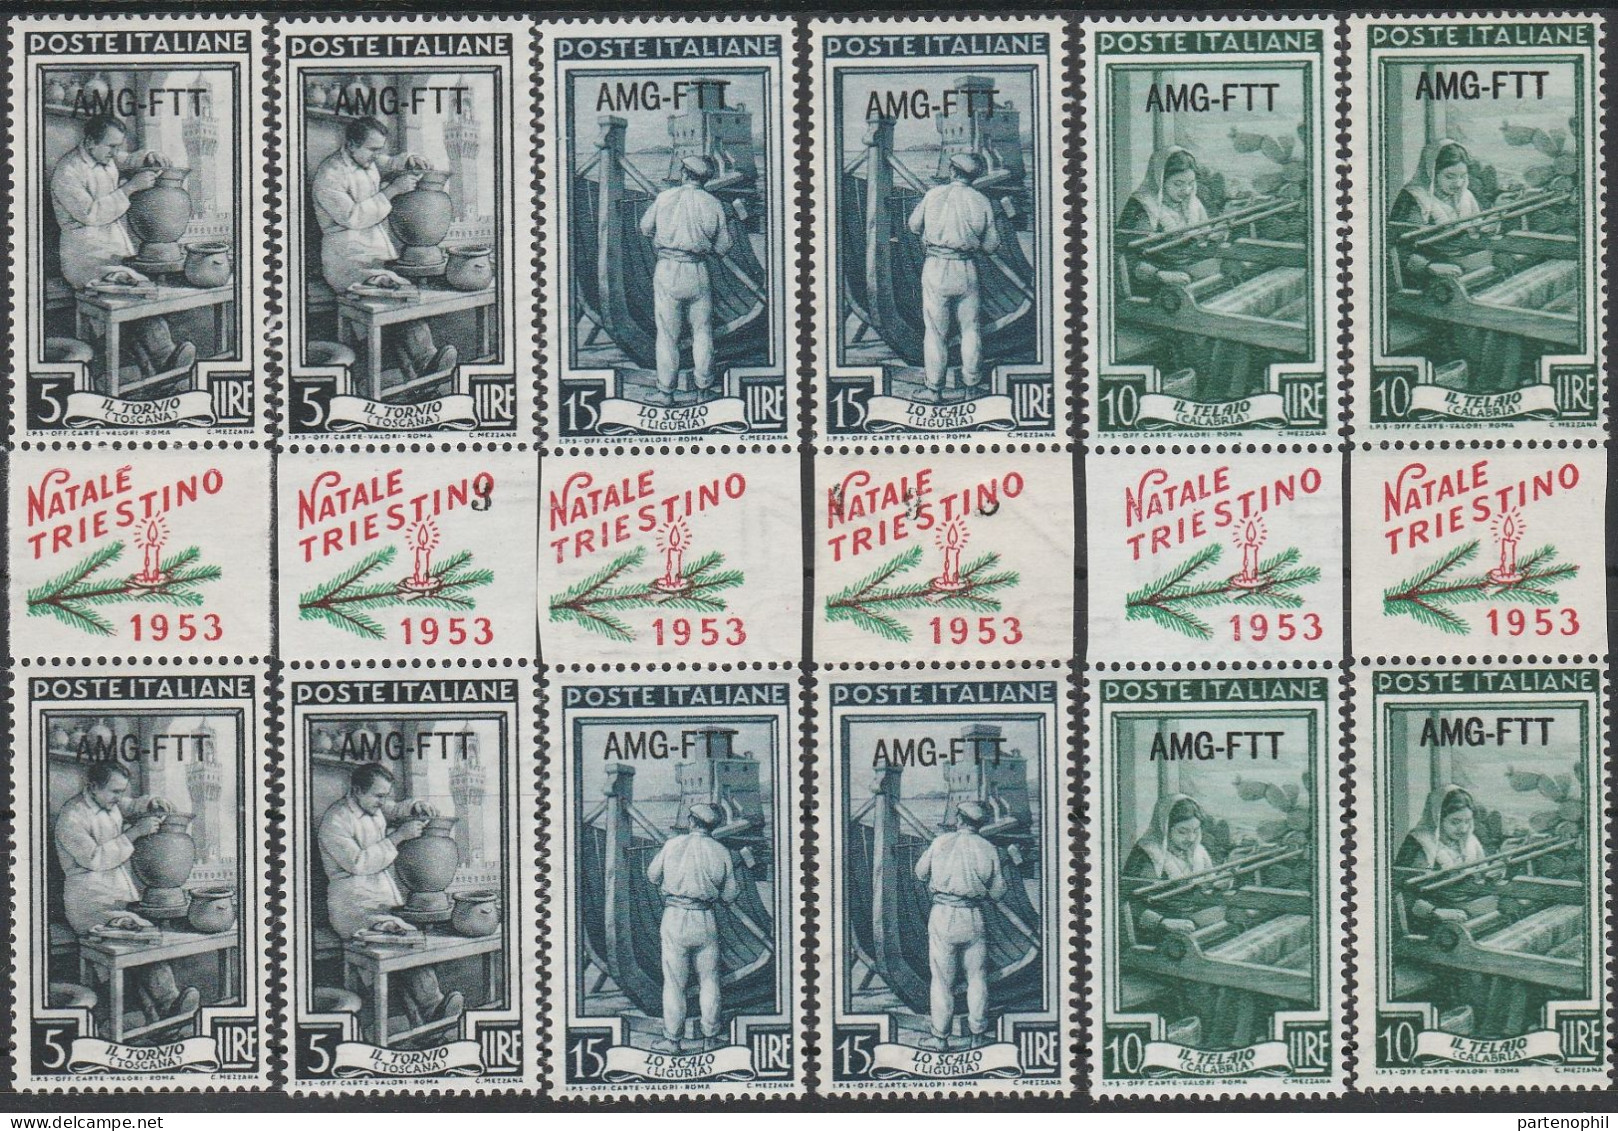 209 - Trieste - 1953 - Natale Triestino 6 Coppie Verticali Con Interspazio Con Vignetta “NATALE TRIESTINO 1953” N. 92+94 - Poststempel